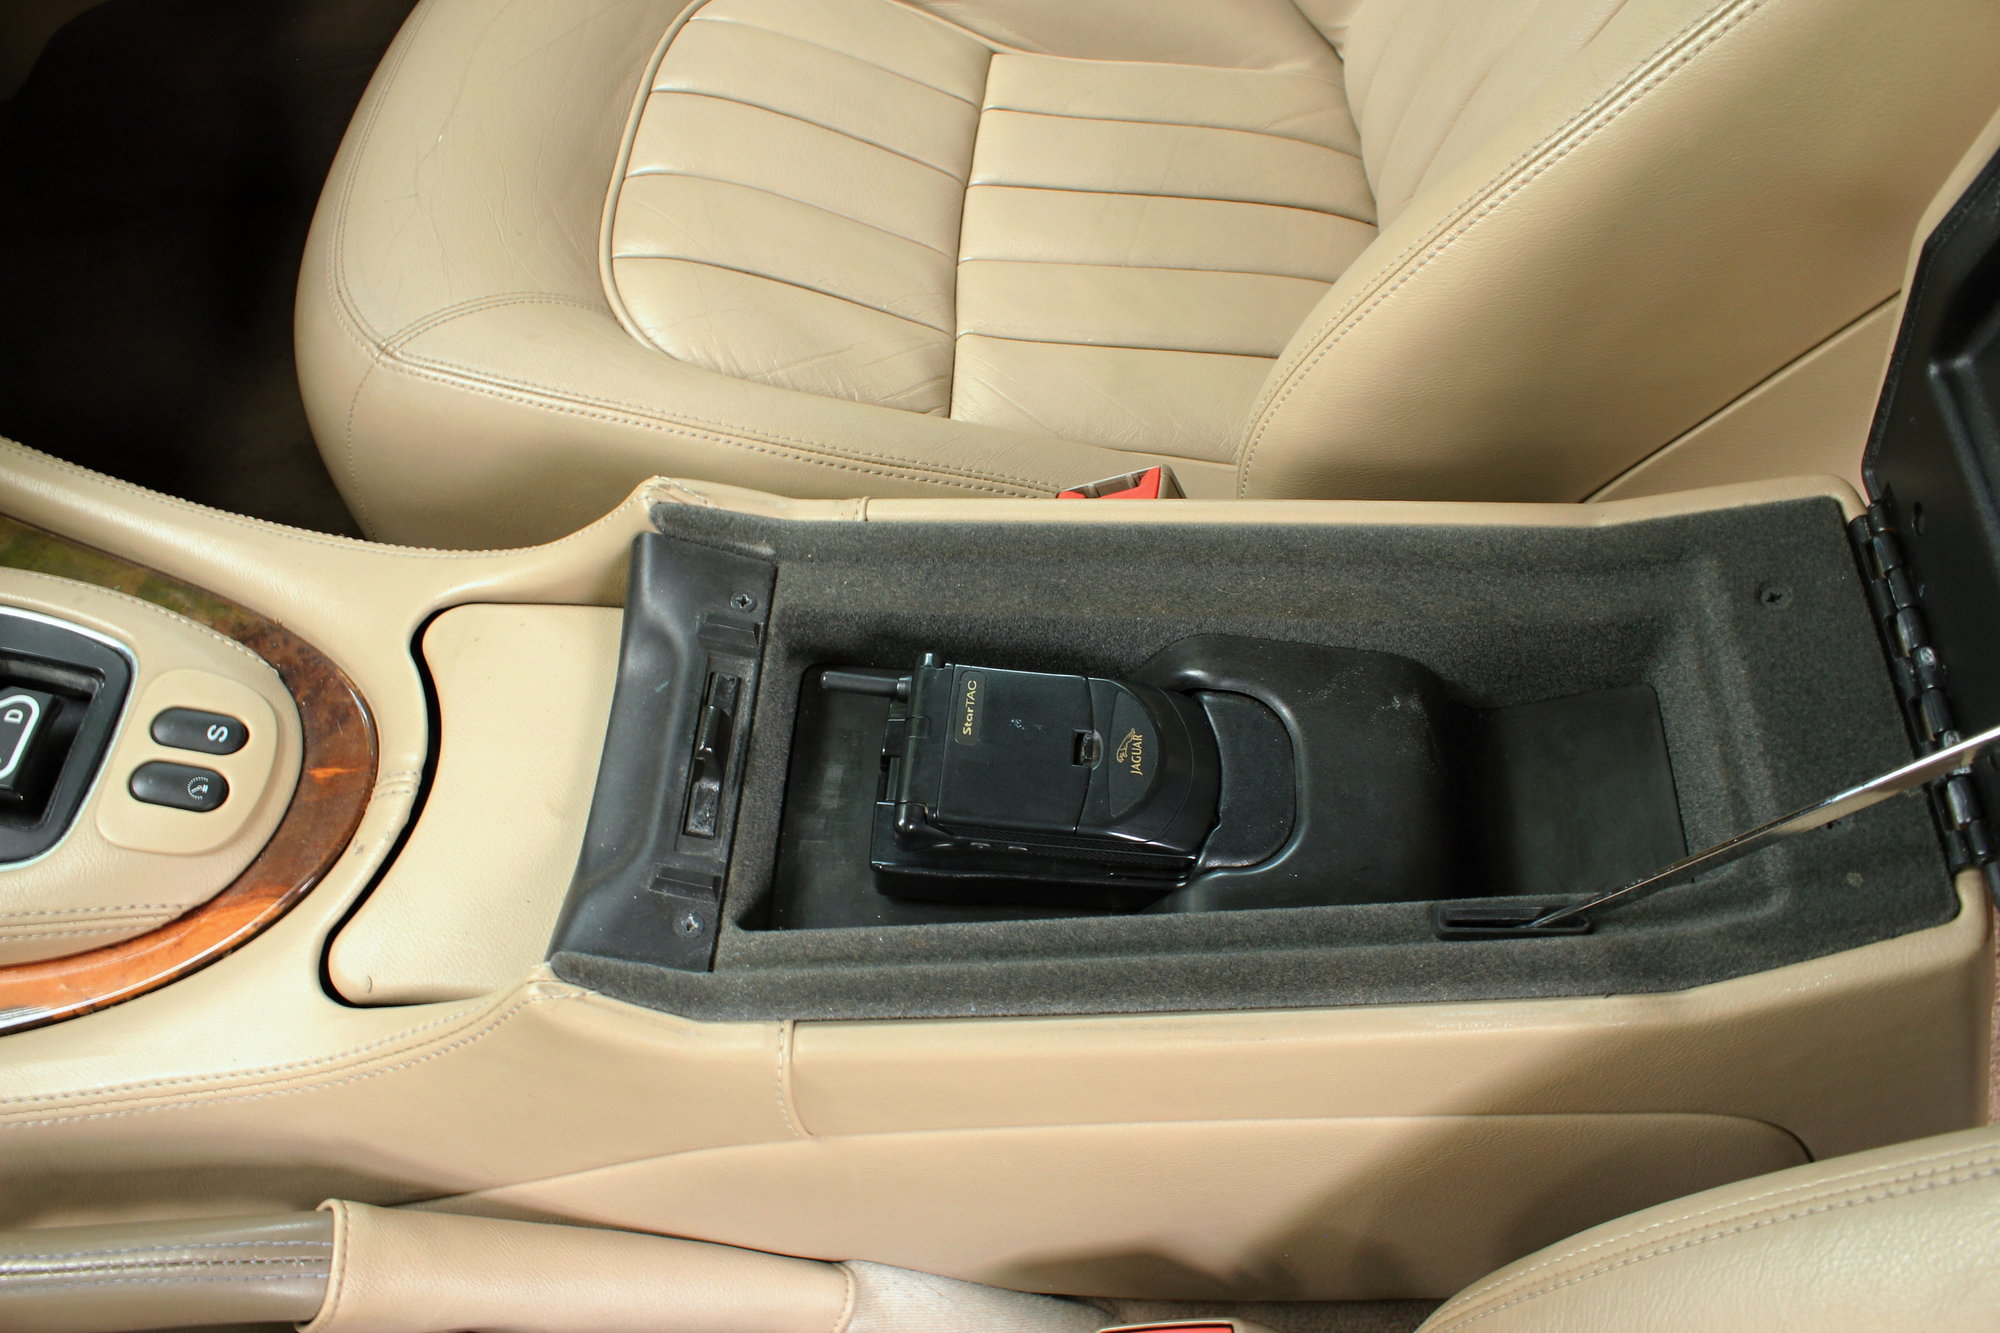 V loketní opěrce je ukryt telefon Motorola Startac ve speciální edici určené pro Jaguar